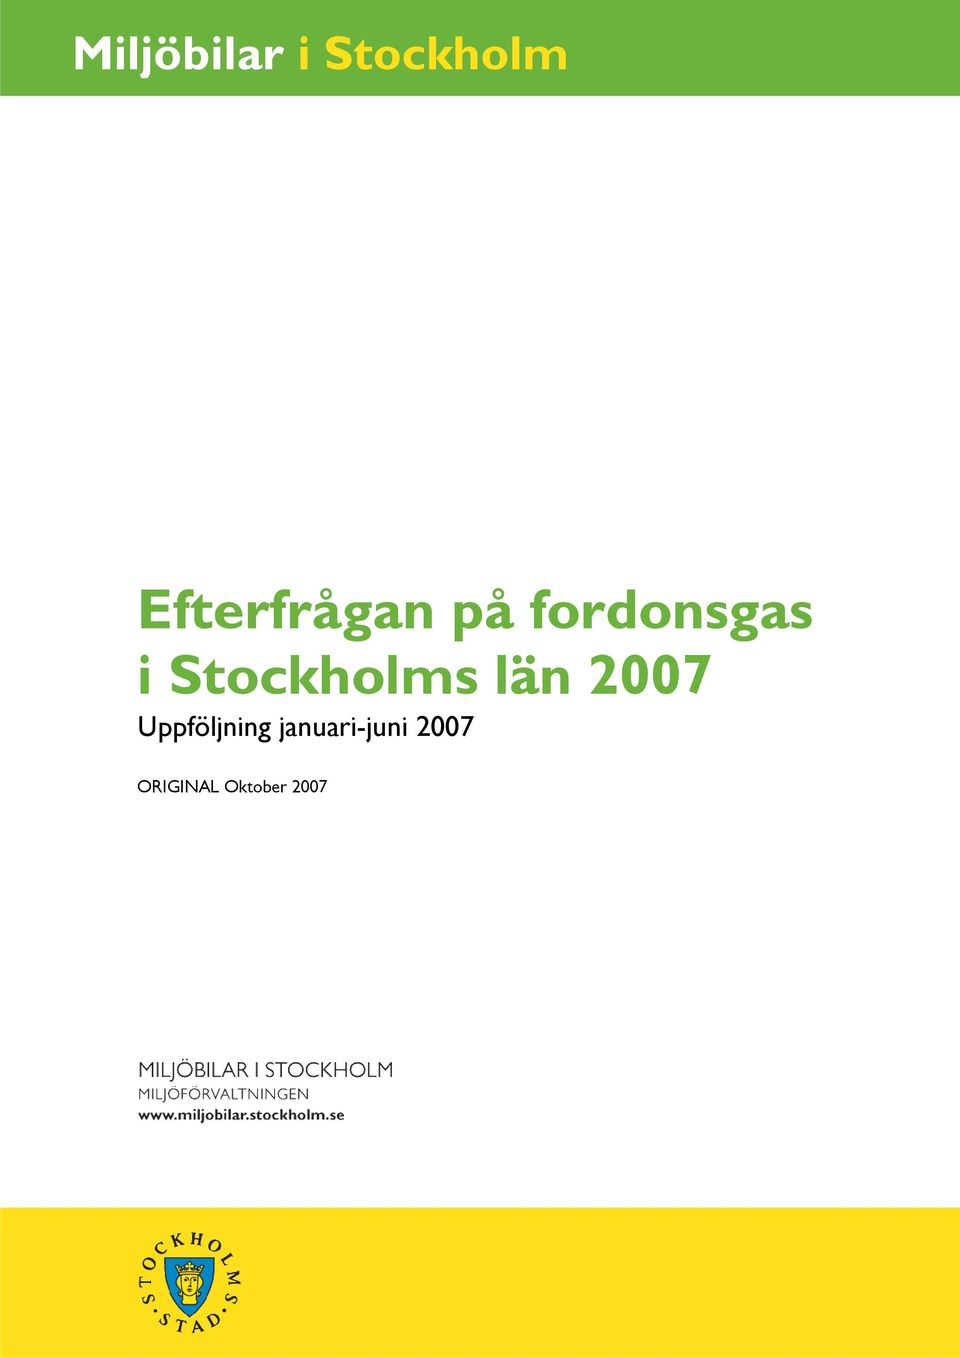 Stockholms län 2007